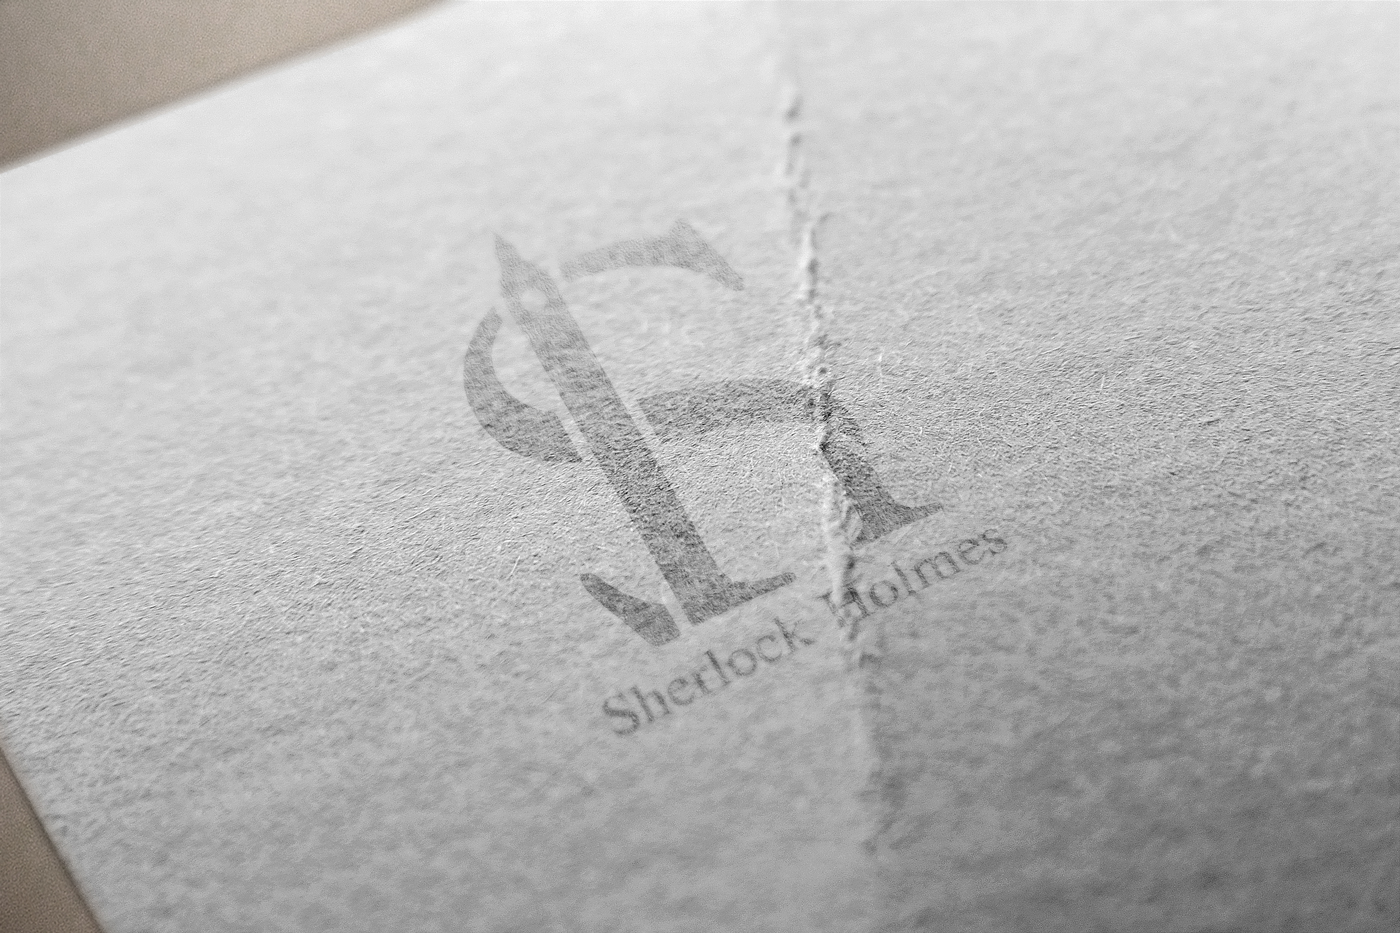 logo Sherlock Holmes Identità di Marca monogramma Logotipo nuovi loghi design stile arte concetto detail monogram Sherlock Holmes Graphix brand identikit 